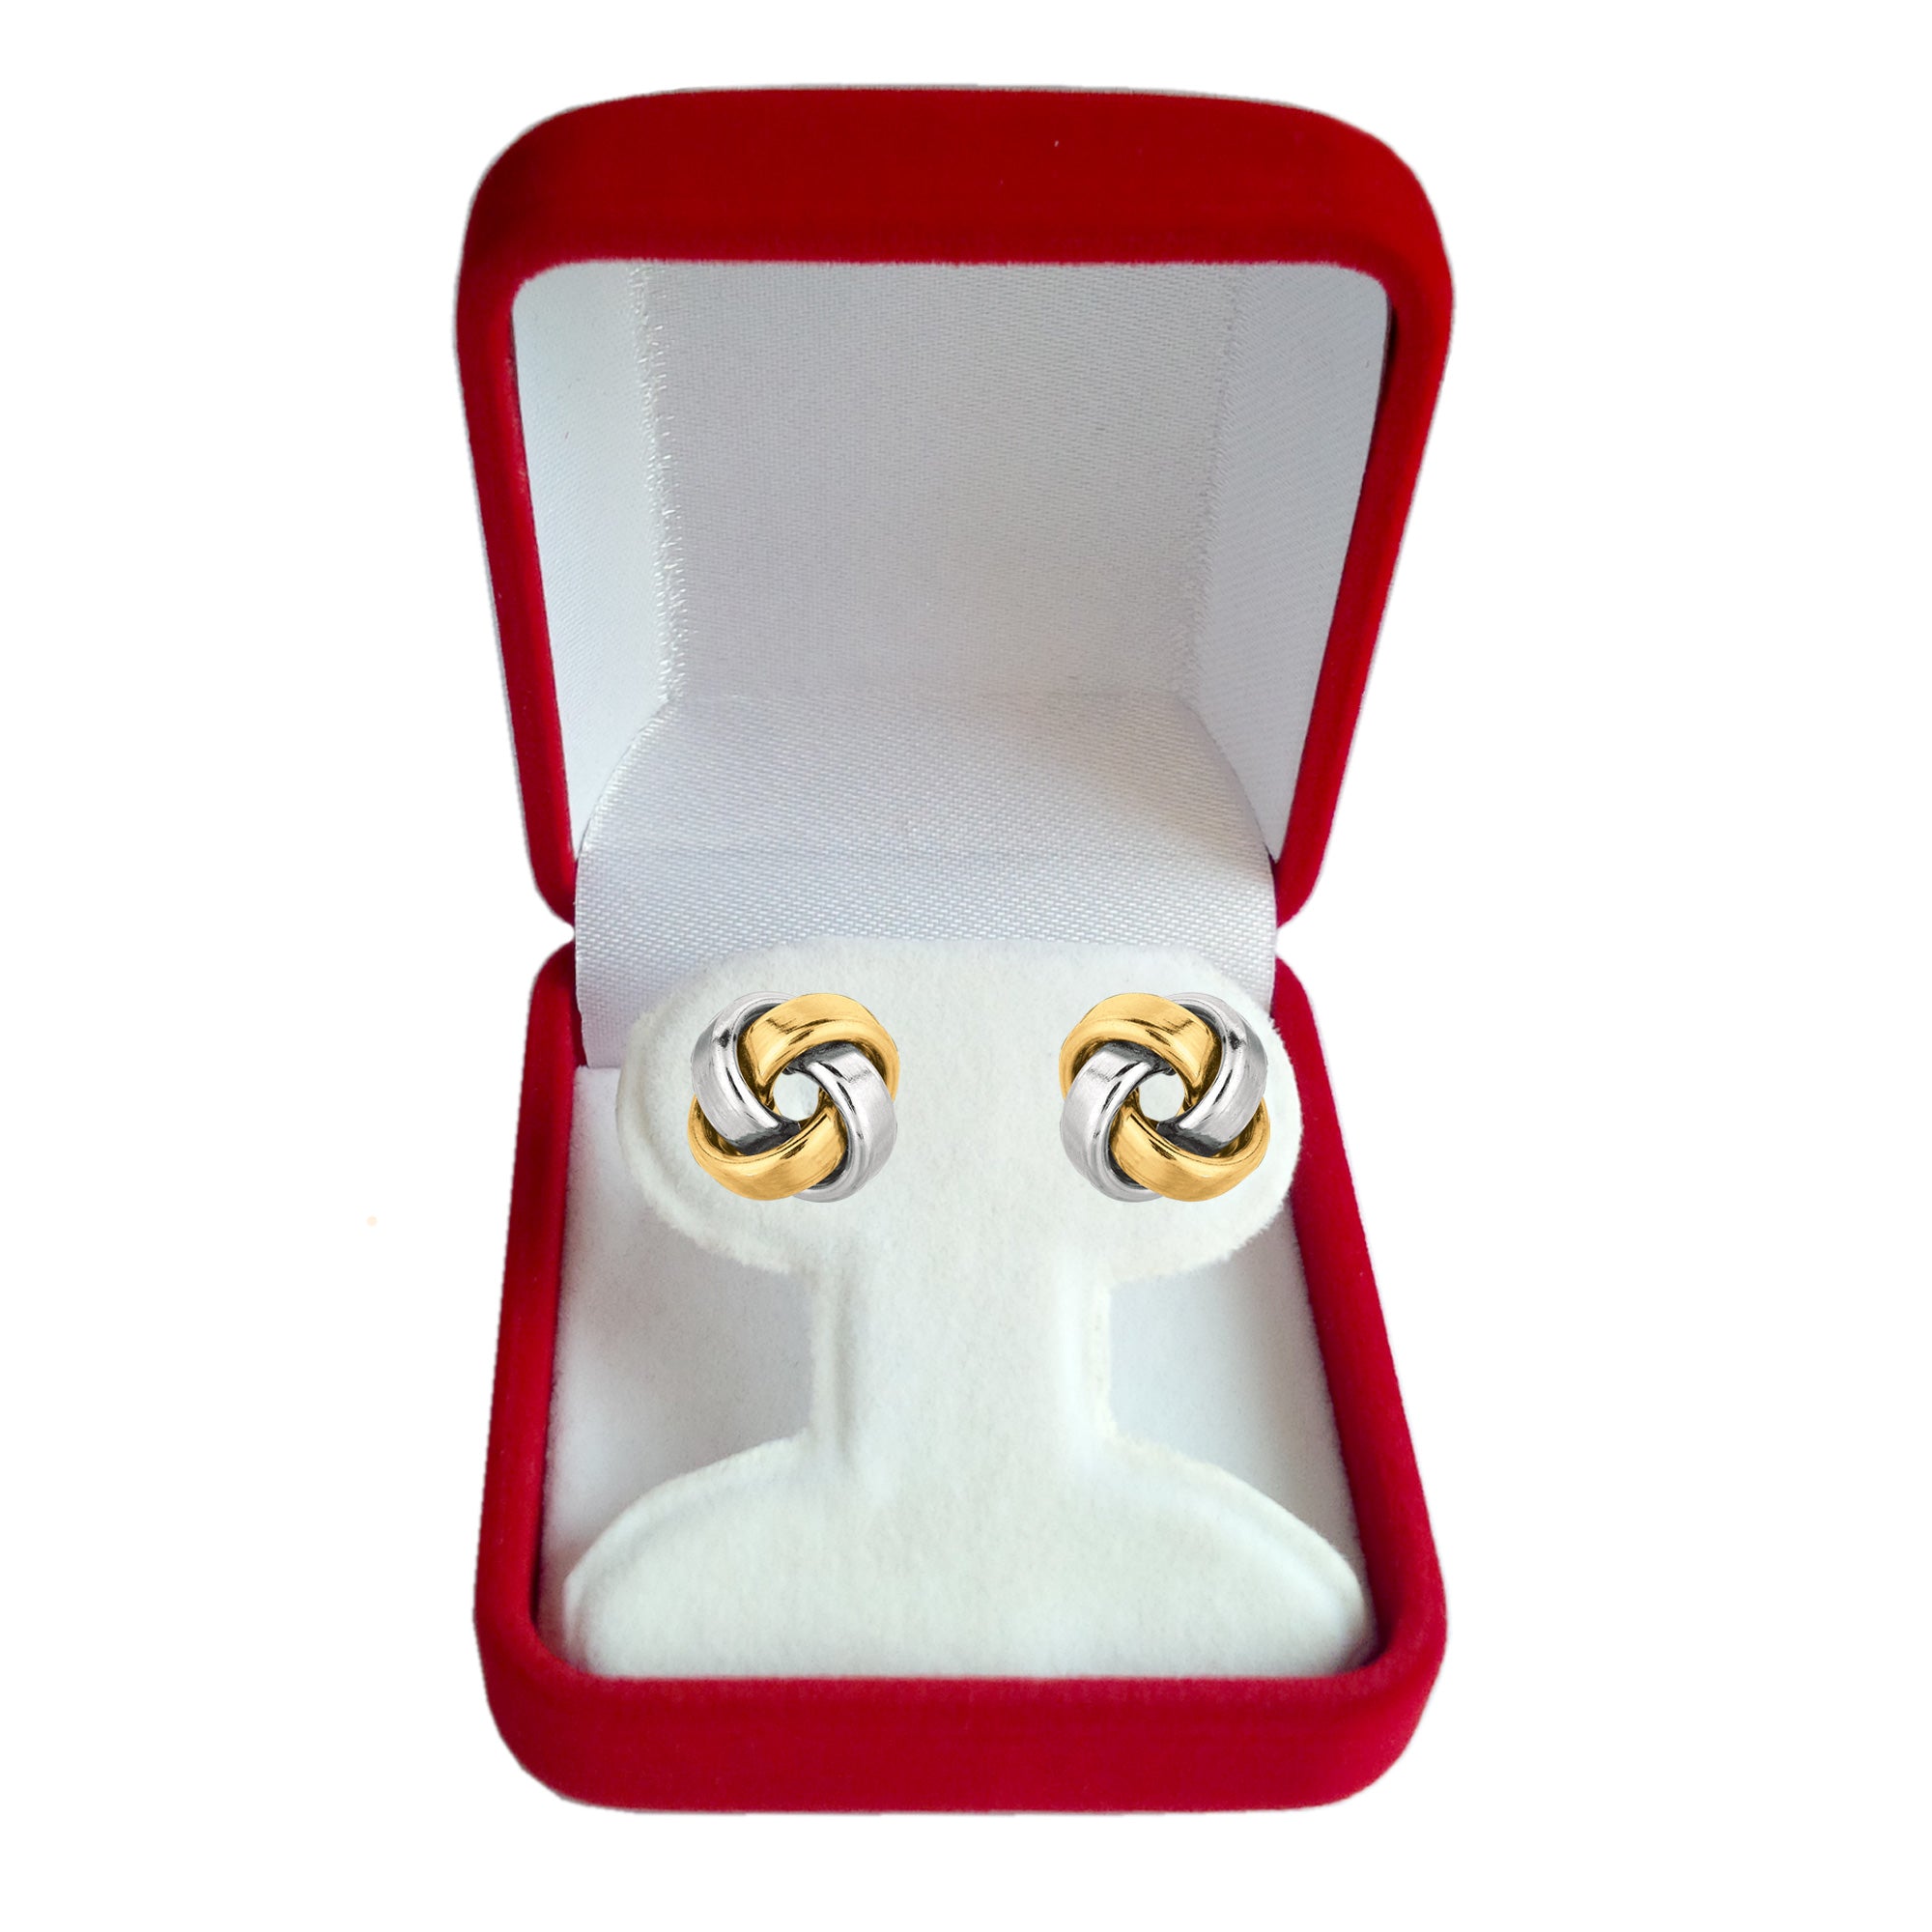 14 k guld glänsande fyrkantigt rör Love Knot Stud örhängen, 10 mm fina designersmycken för män och kvinnor